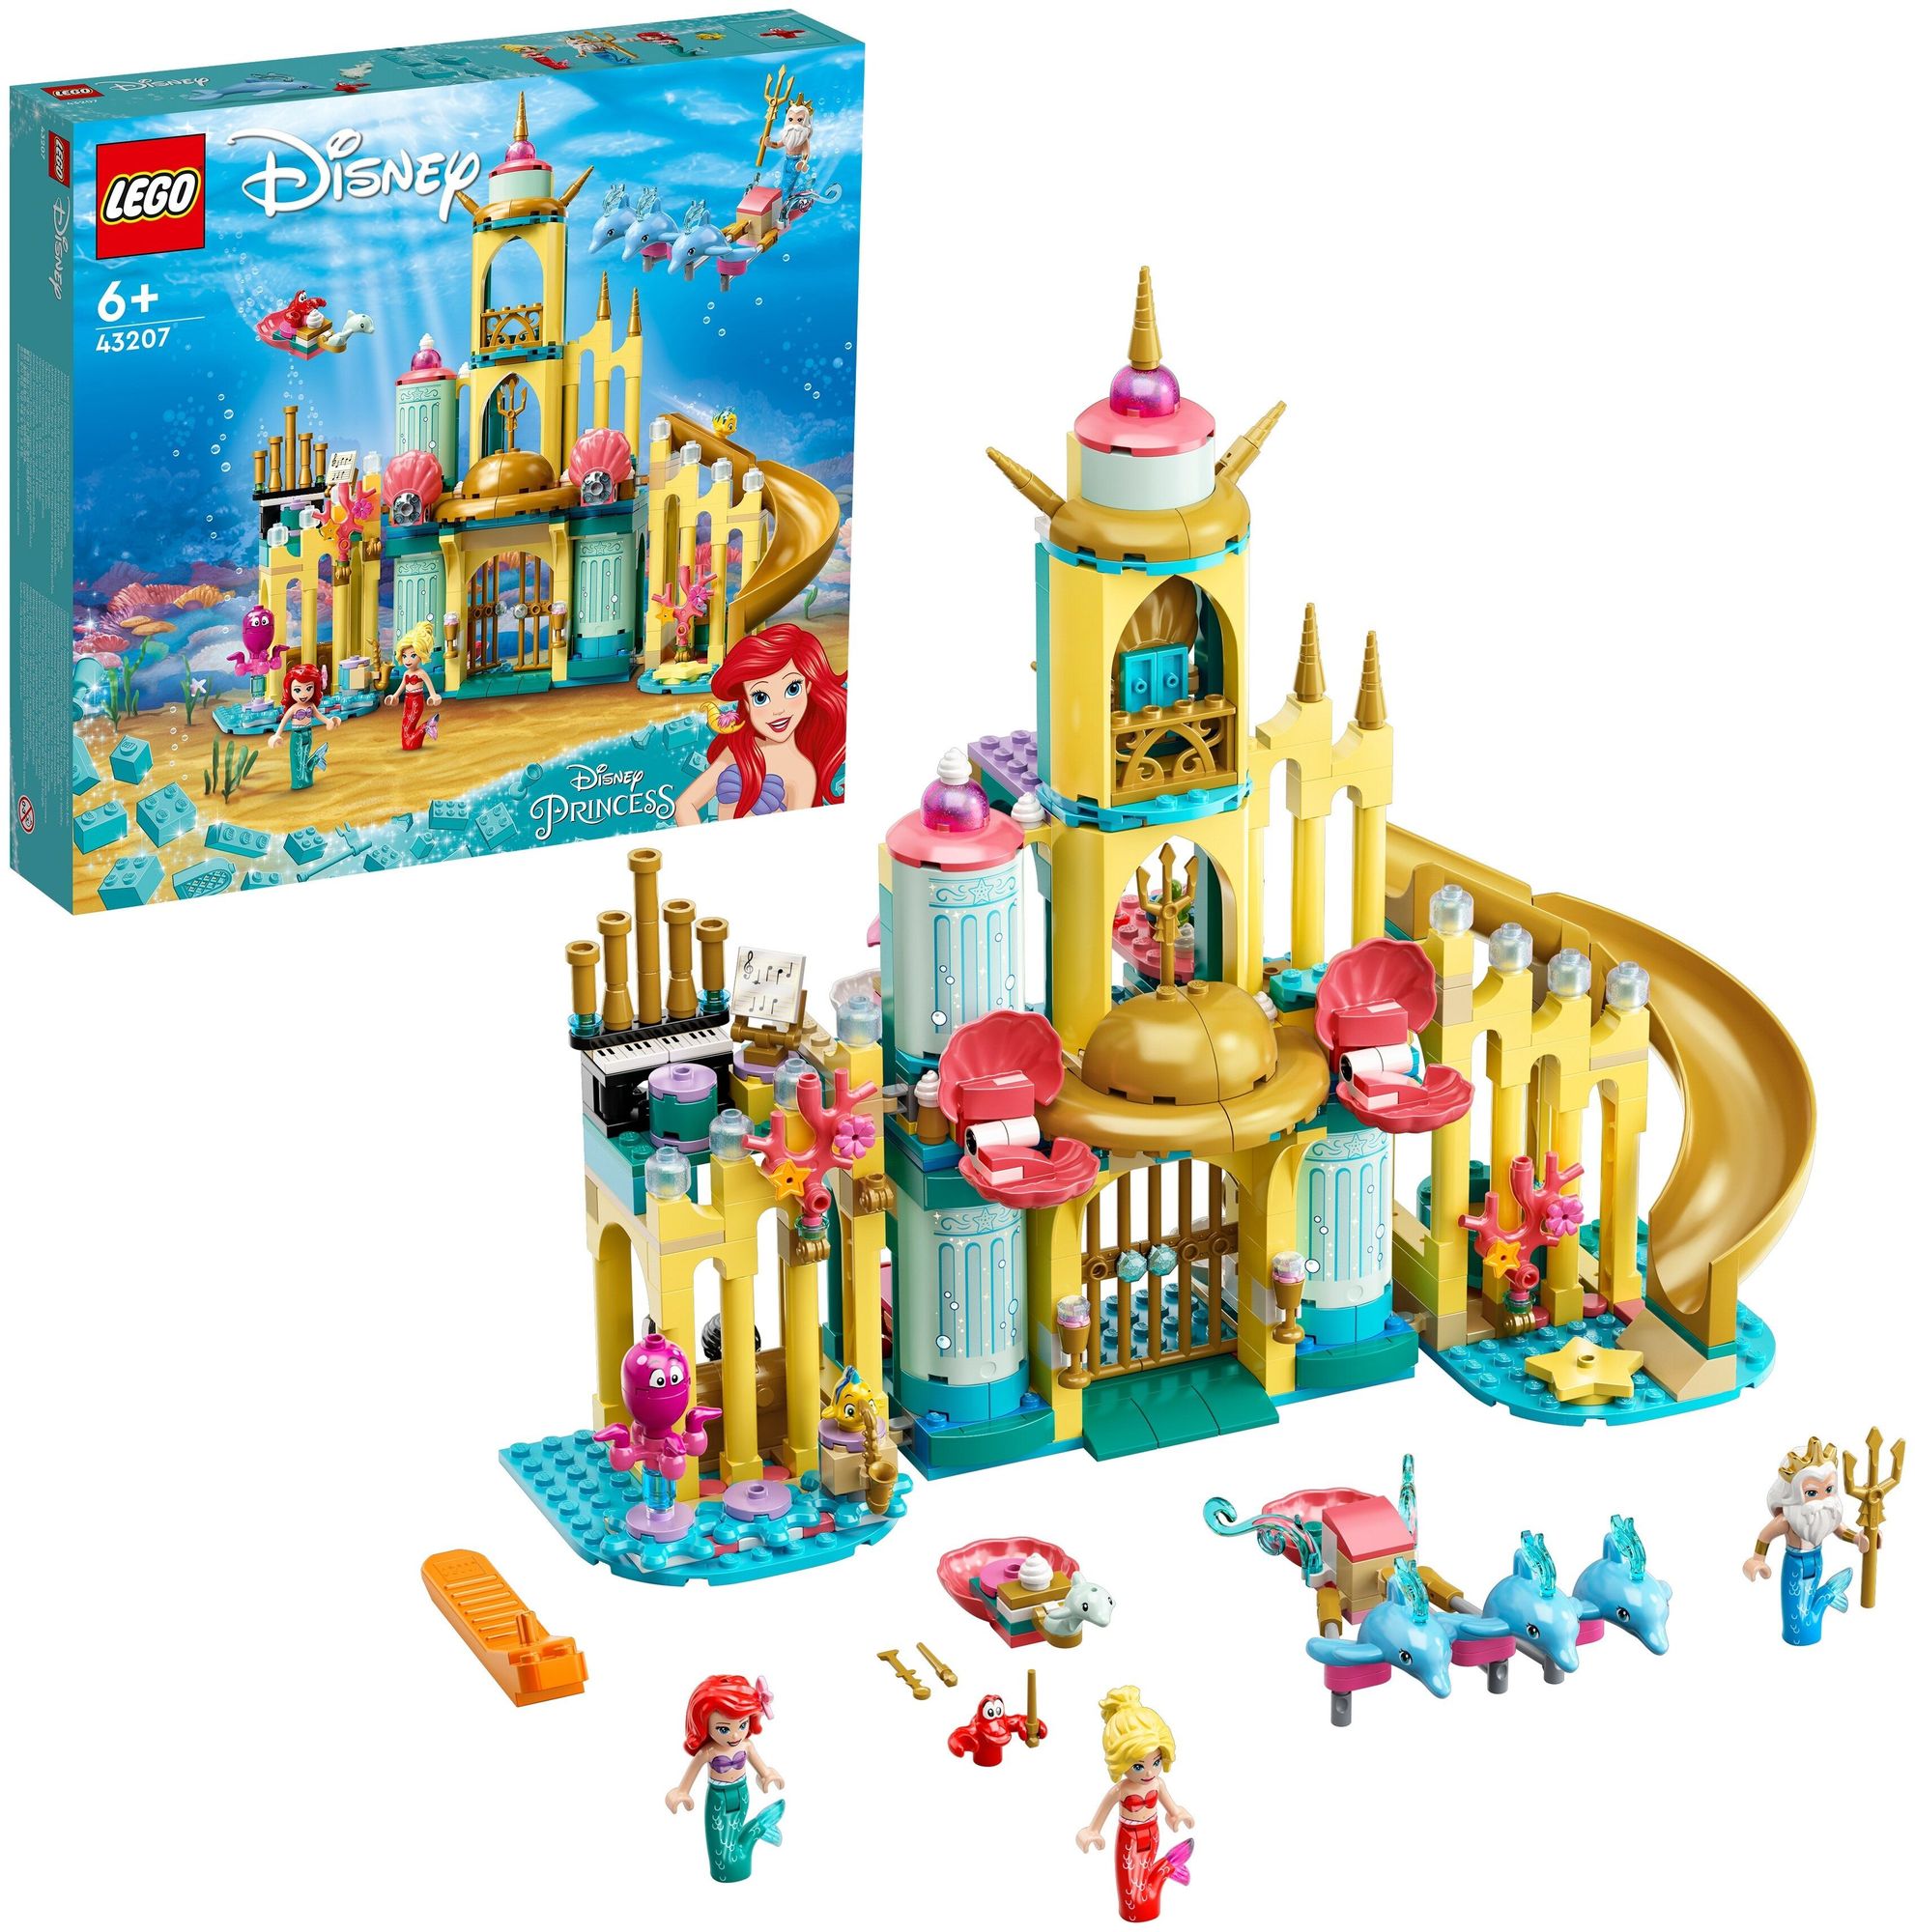 Конструктор LEGO Disney Princess Подводный дворец Ариэль 43207 конструктор lego disney princess 43196 колокольня